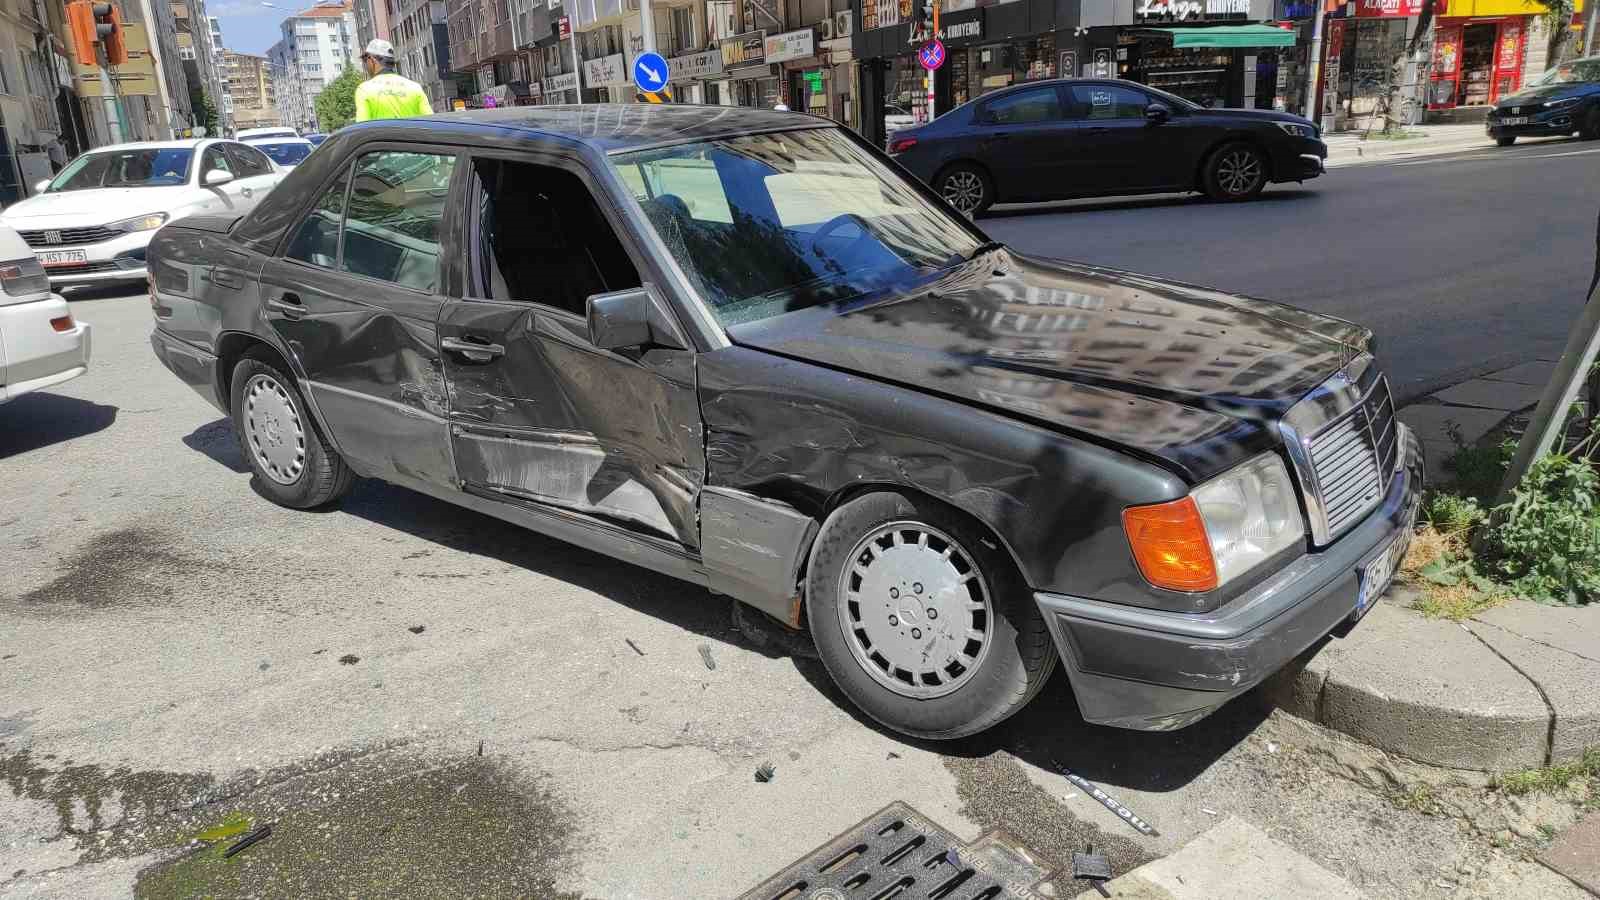 Kırmızı ışık ihlali yapan otomobilin sebep olduğu kaza güvenlik kamerasına yansıdı